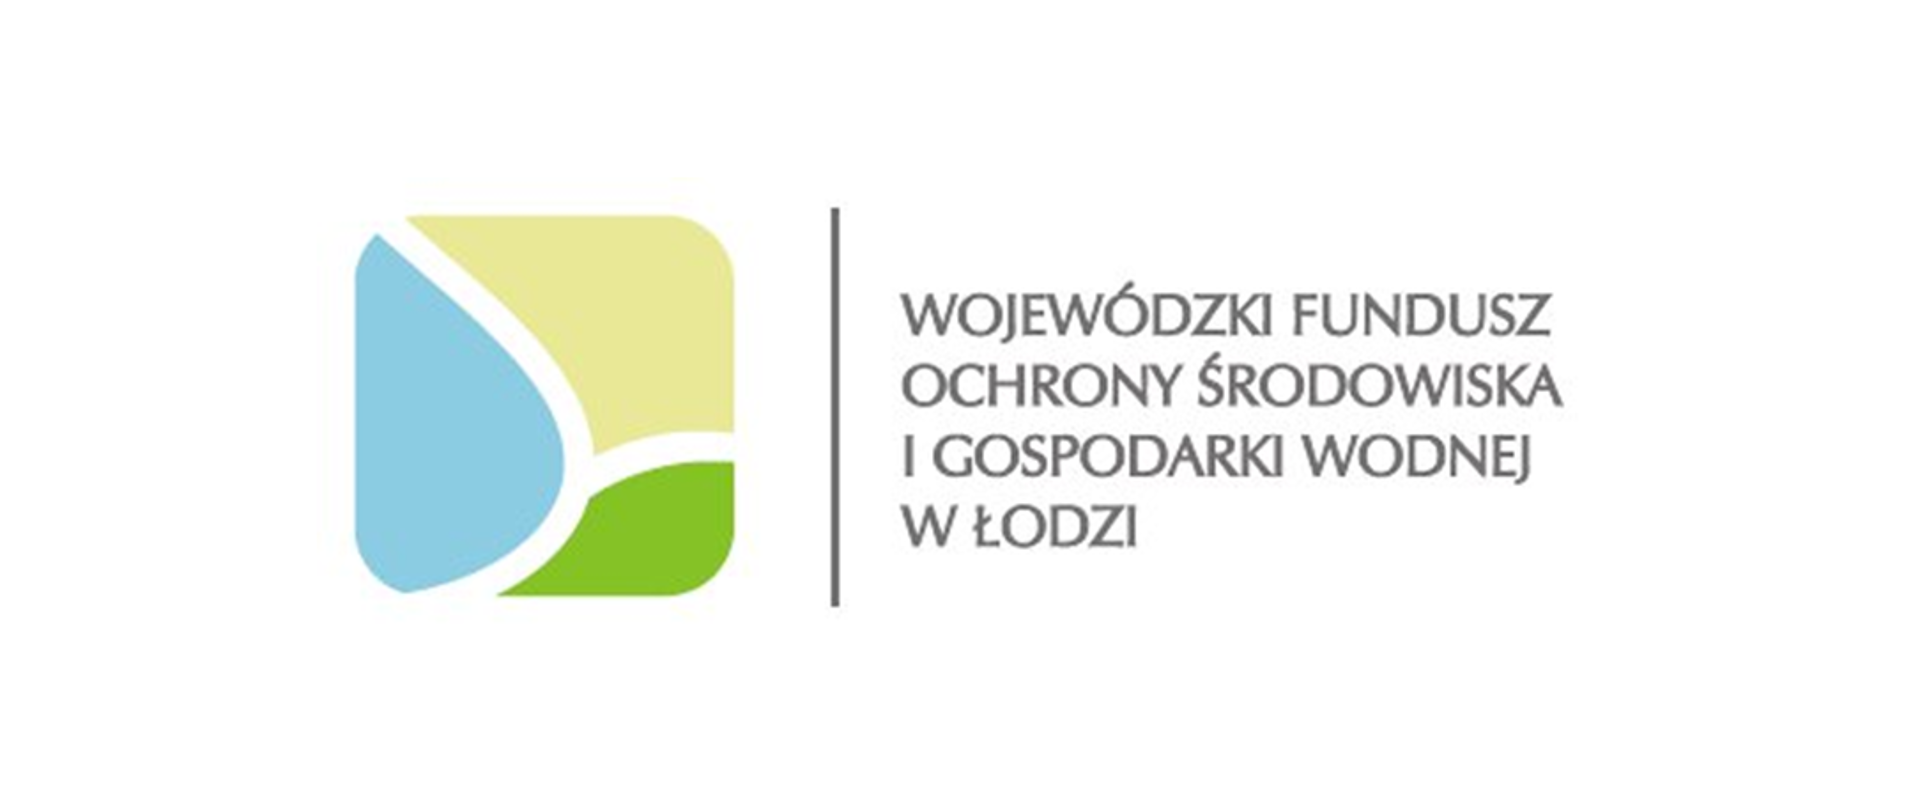 Logo Wojewódzki Fundusz Ochrony Środowiska i Gospodarki Wodnej w Łodzi